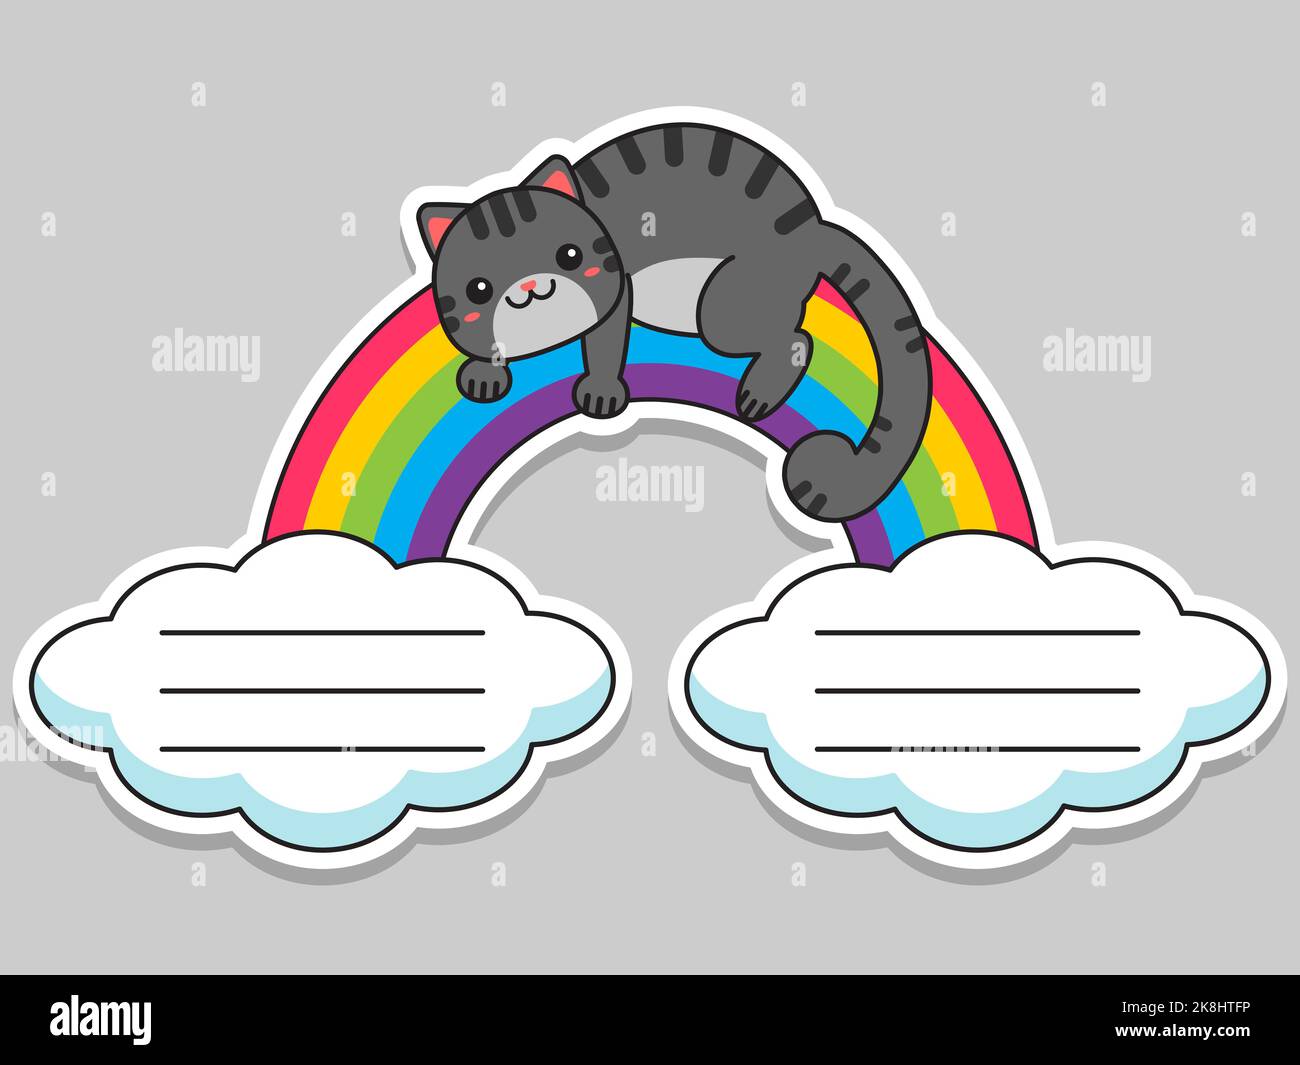 Etichette per notebook. Il gatto si trova sull'arcobaleno. Etichette delle note. Adesivi per bambini. Adesivi scuola. Illustrazione vettoriale. Illustrazione Vettoriale